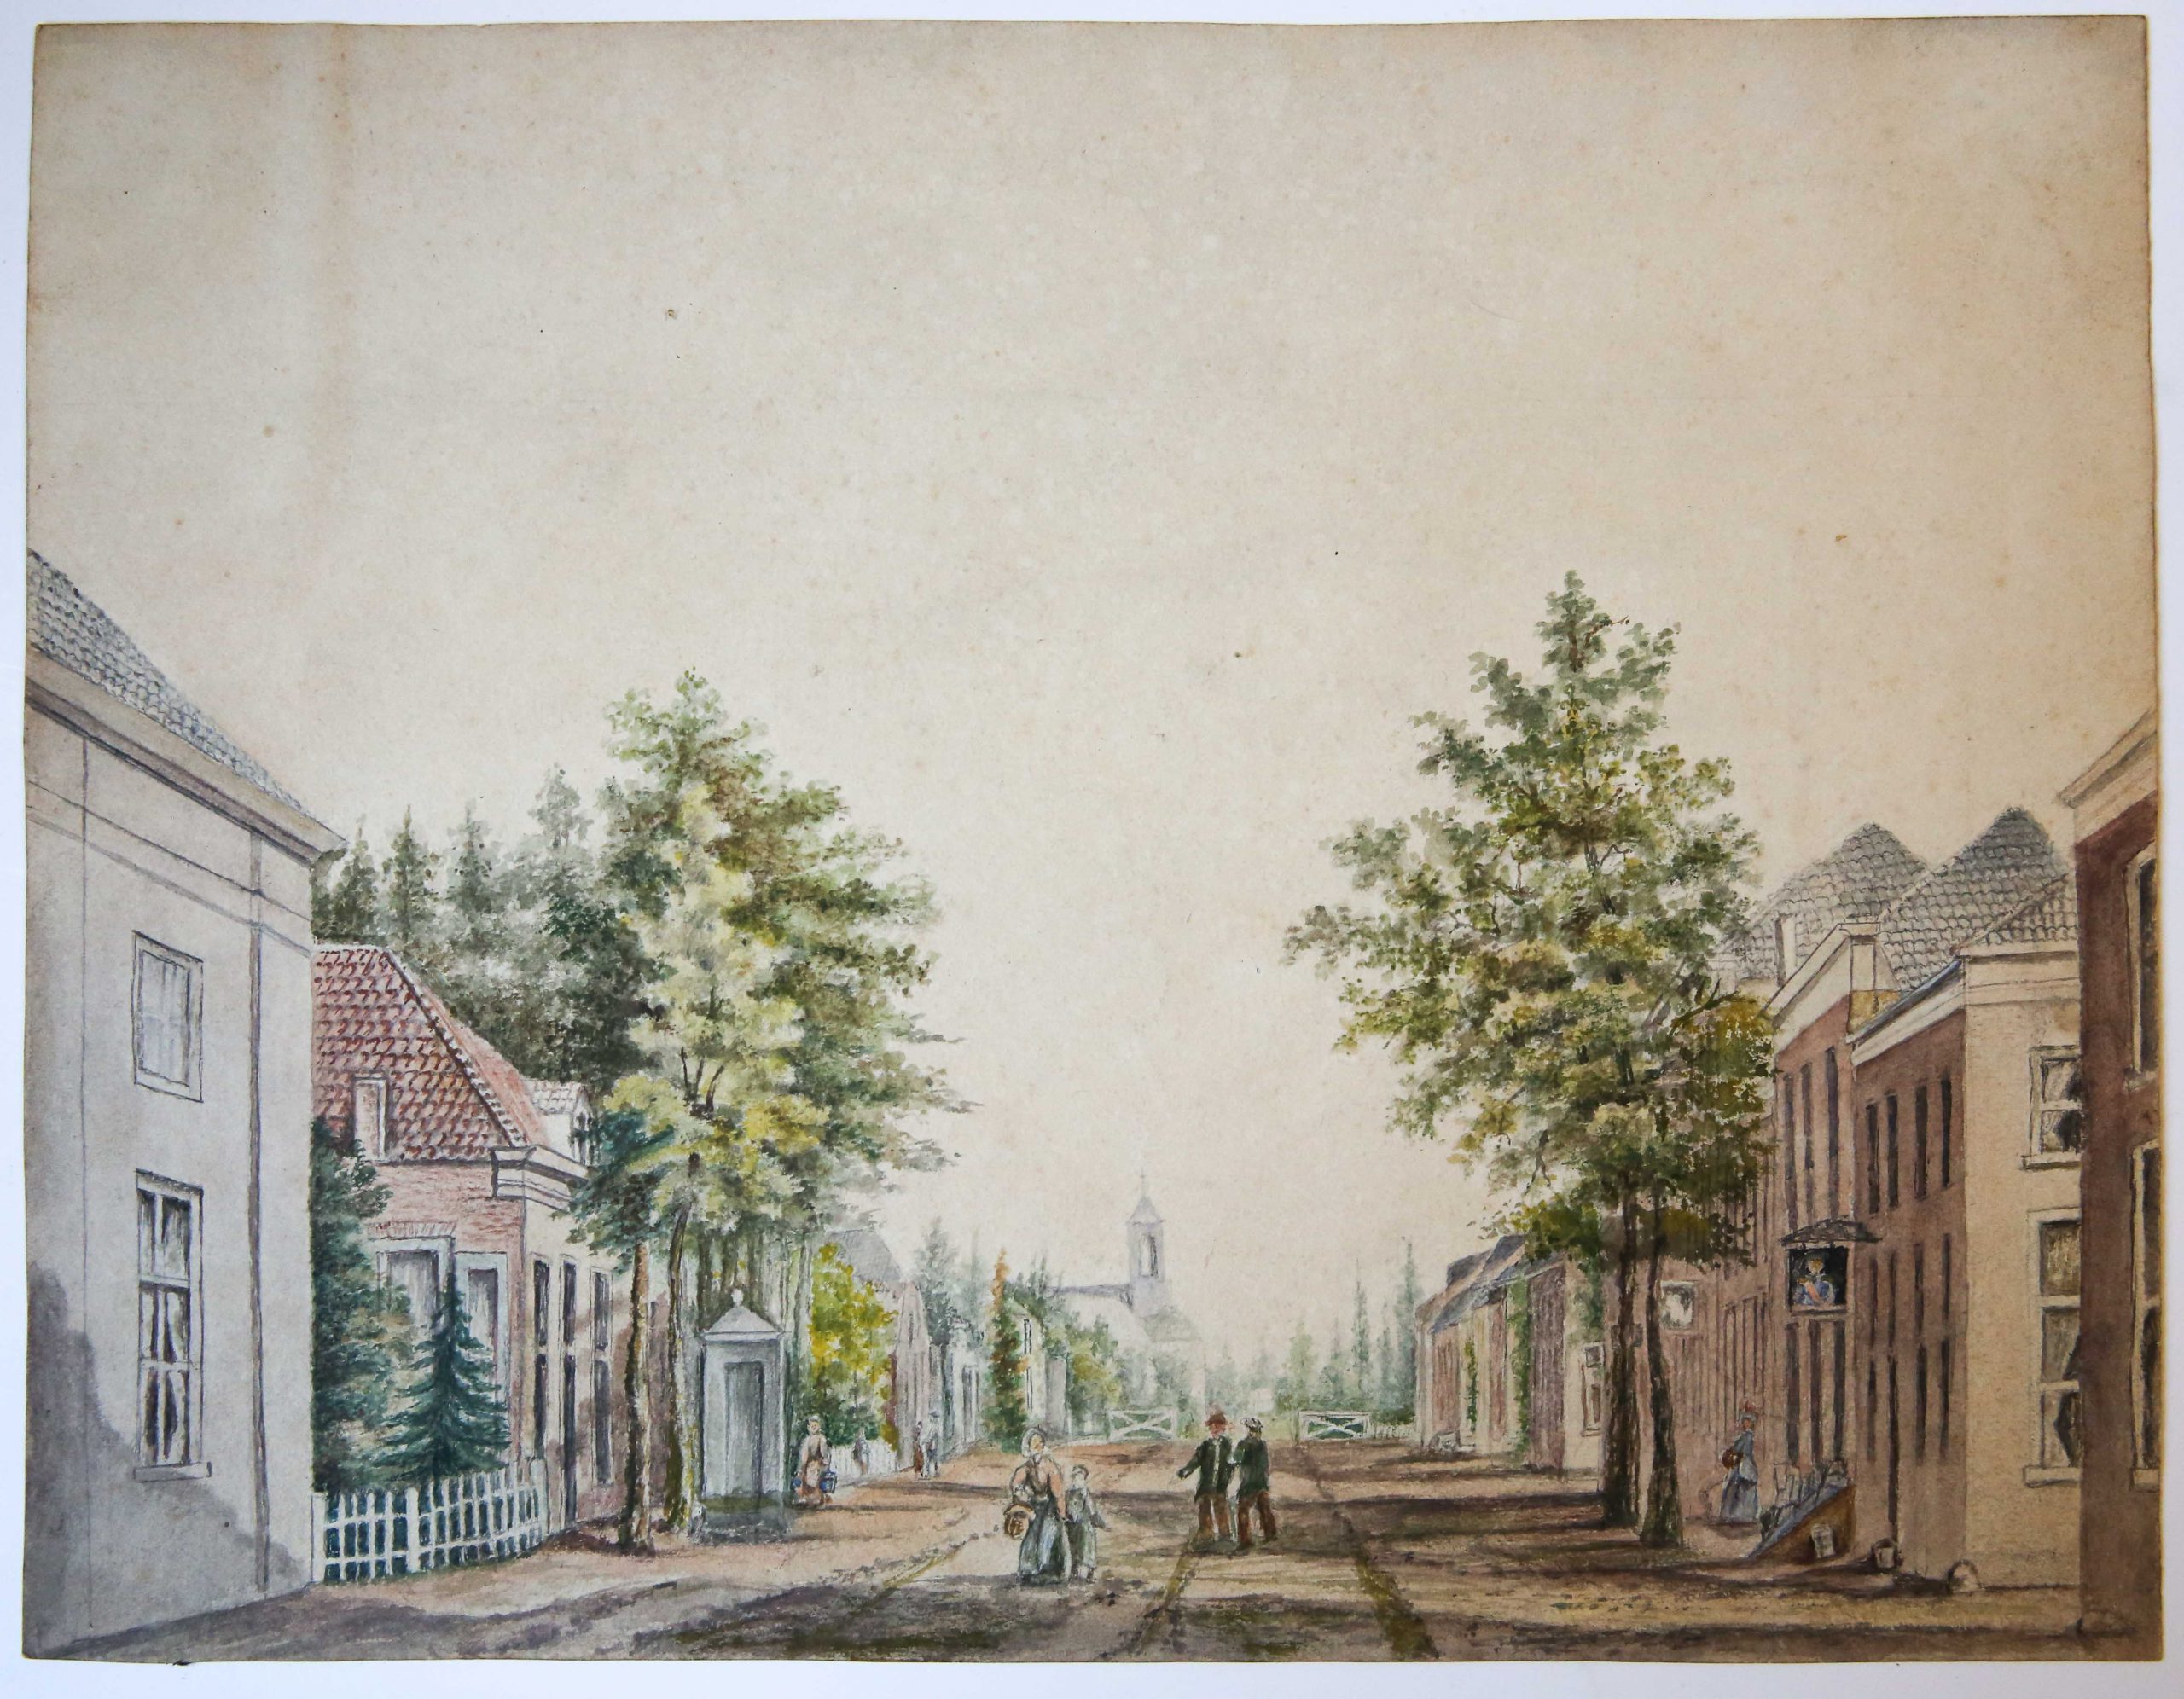  - AQUAREL--- Aquarel van een Dorpsstraat met pomp, kerk en personen. 19e eeuws, 28x36 cm. Anoniem.